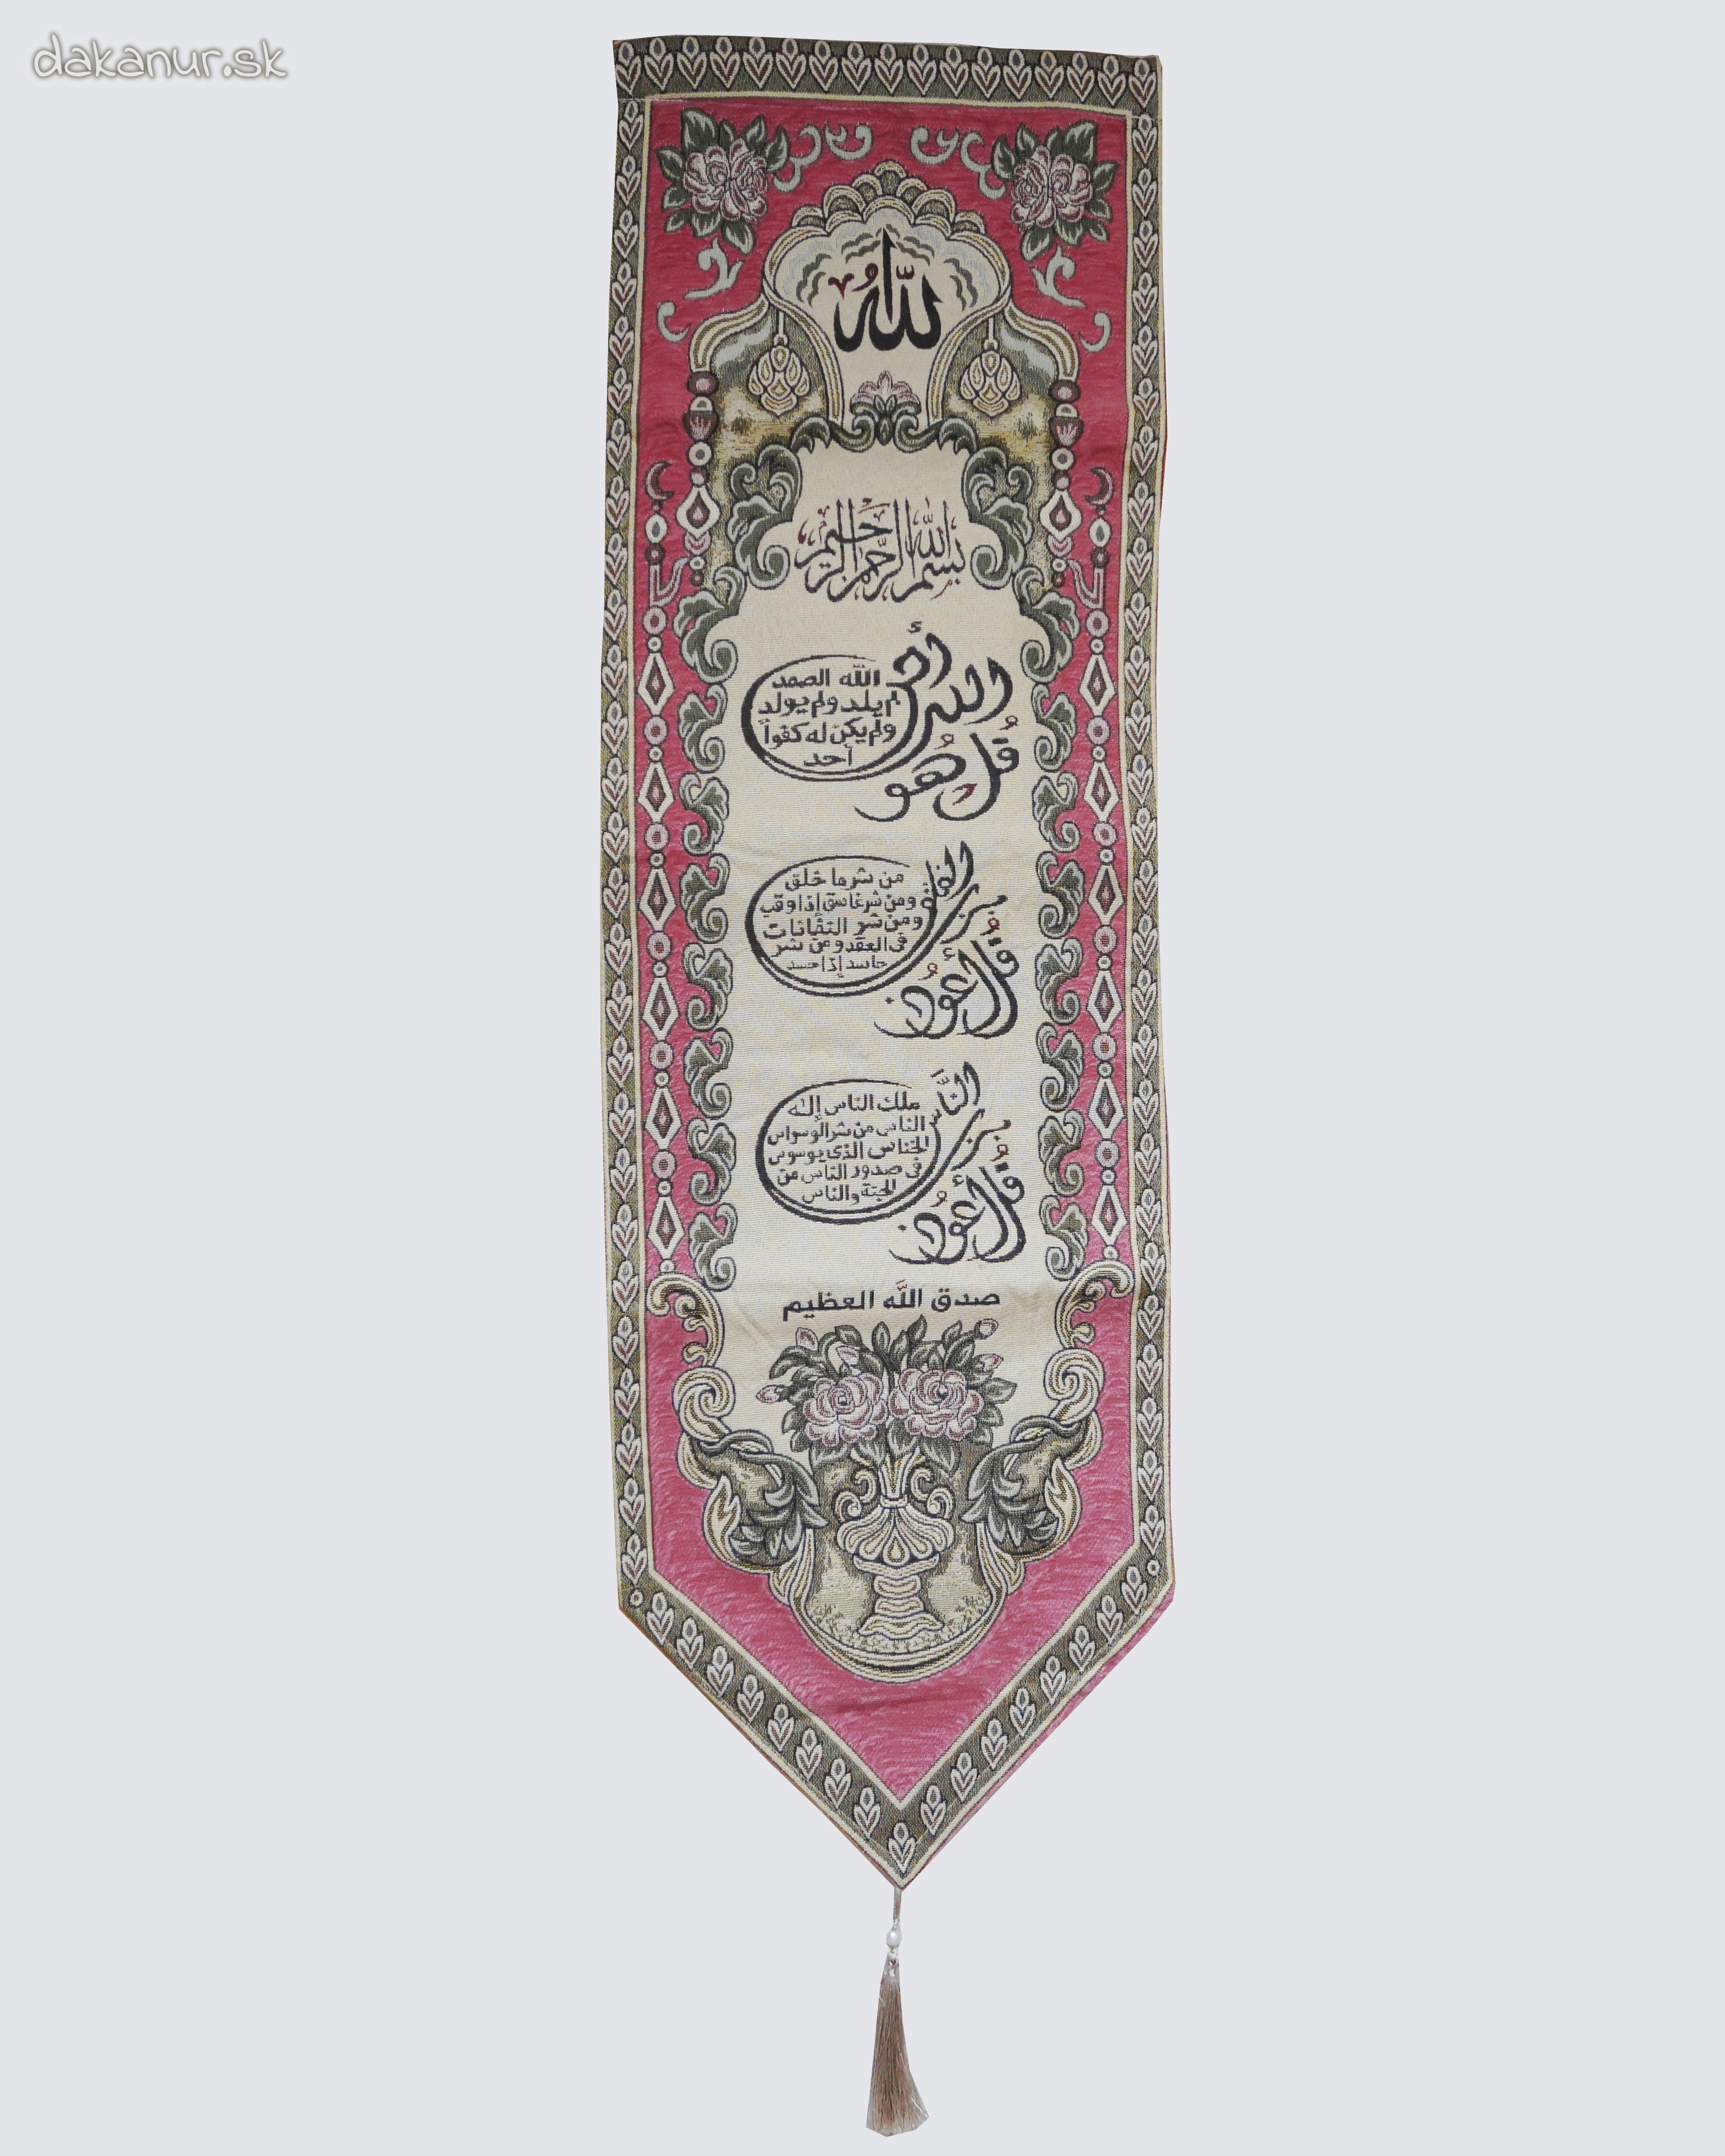 Gobelín, islamská ružová kaligrafia - 3 súry Koránu